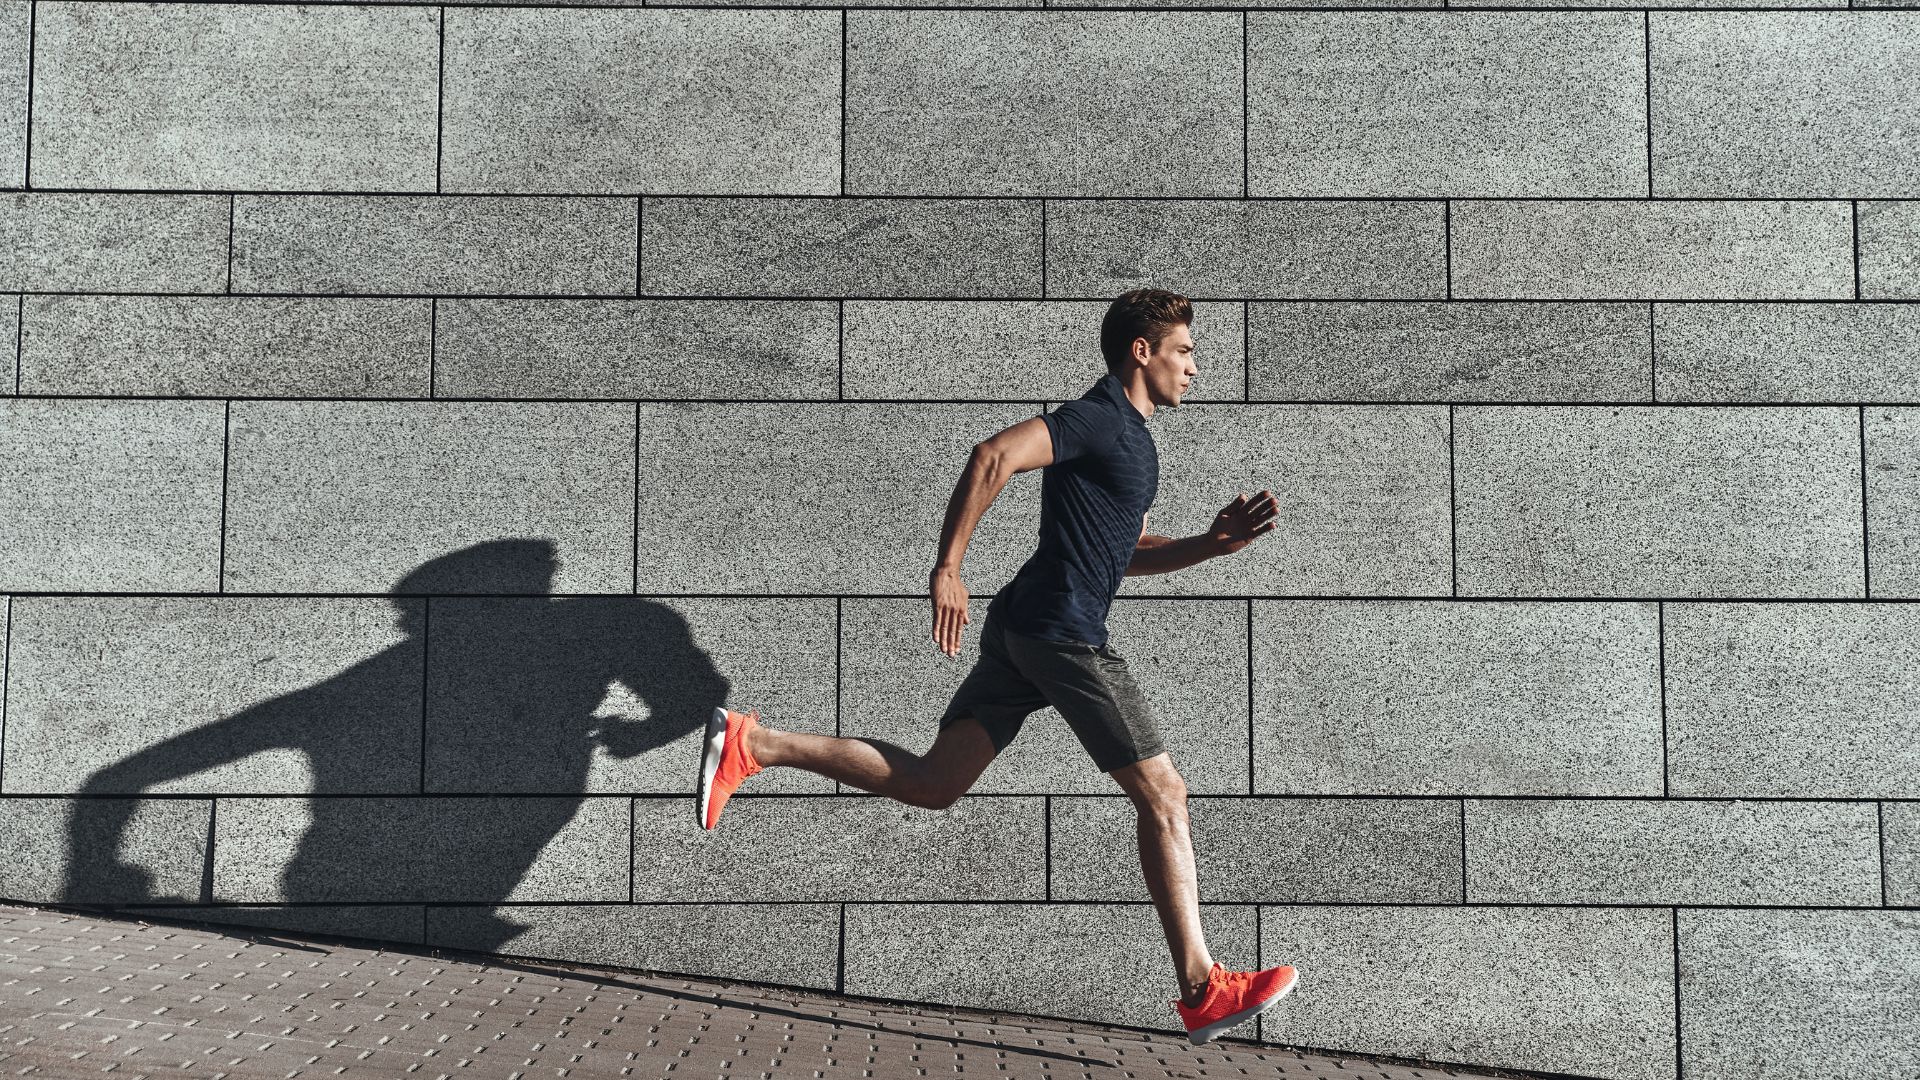 Ruch to zdrowie, dlatego mężczyzna na zdjeciu podejmuje aktywność fizyczną, biegnąc przez miasto.